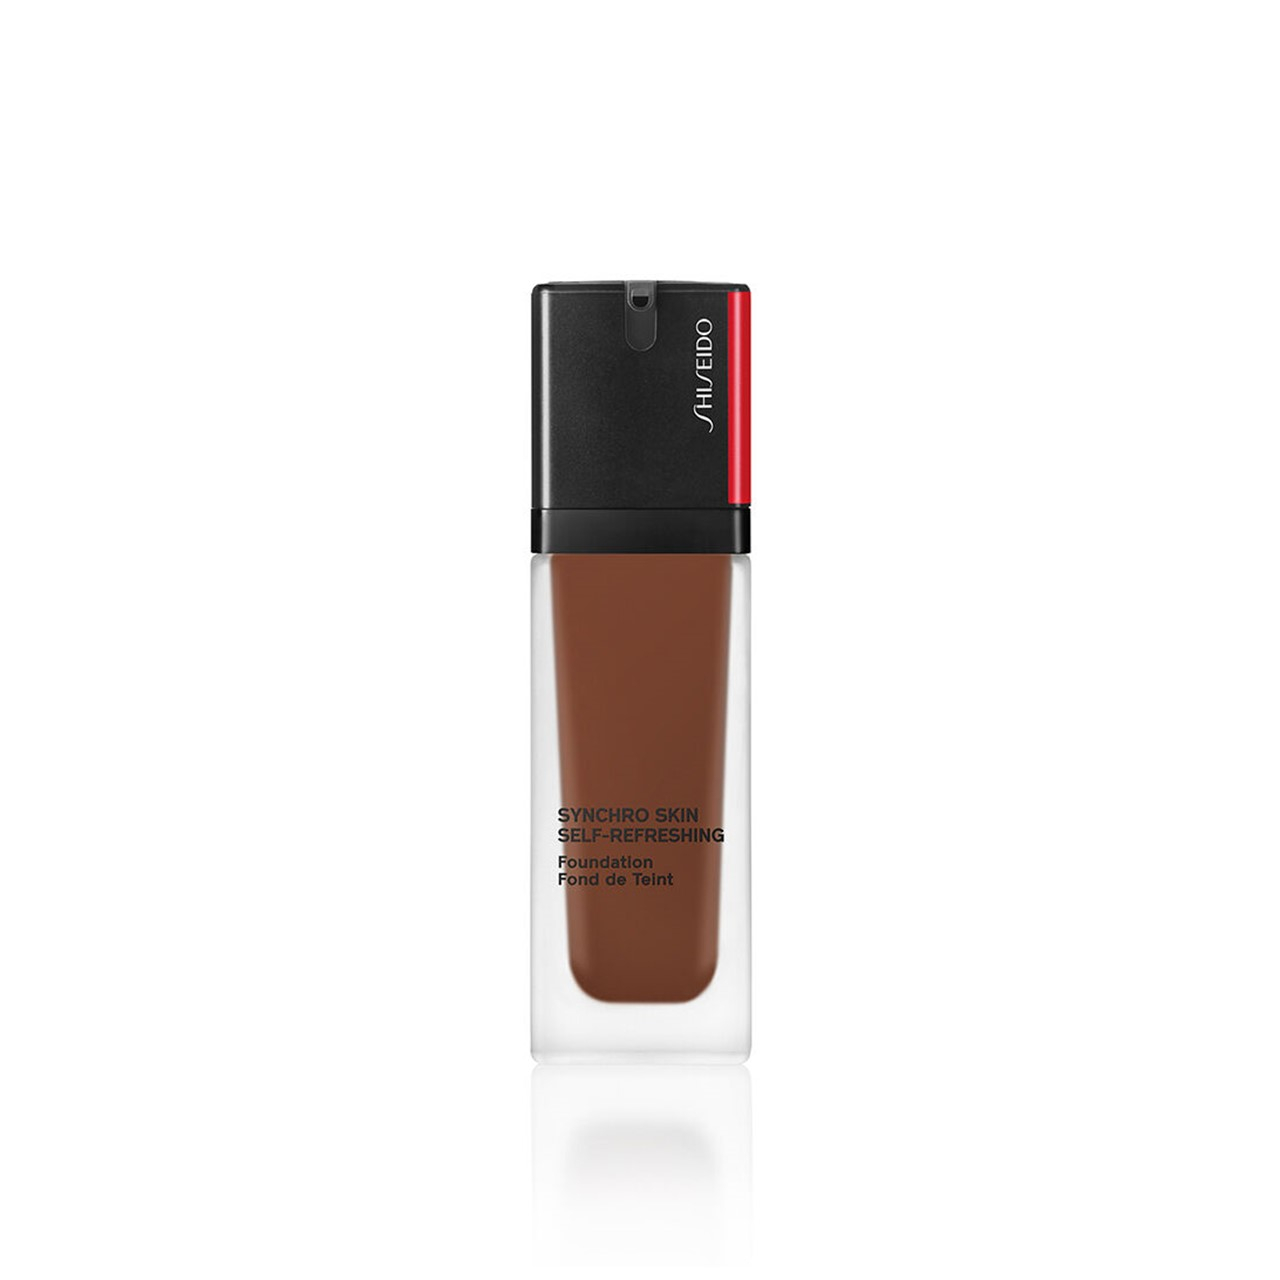 Shiseido Synchro Skin Self-Refreshing Foundation SPF30 550 Jasper 30ml (1.01fl oz)